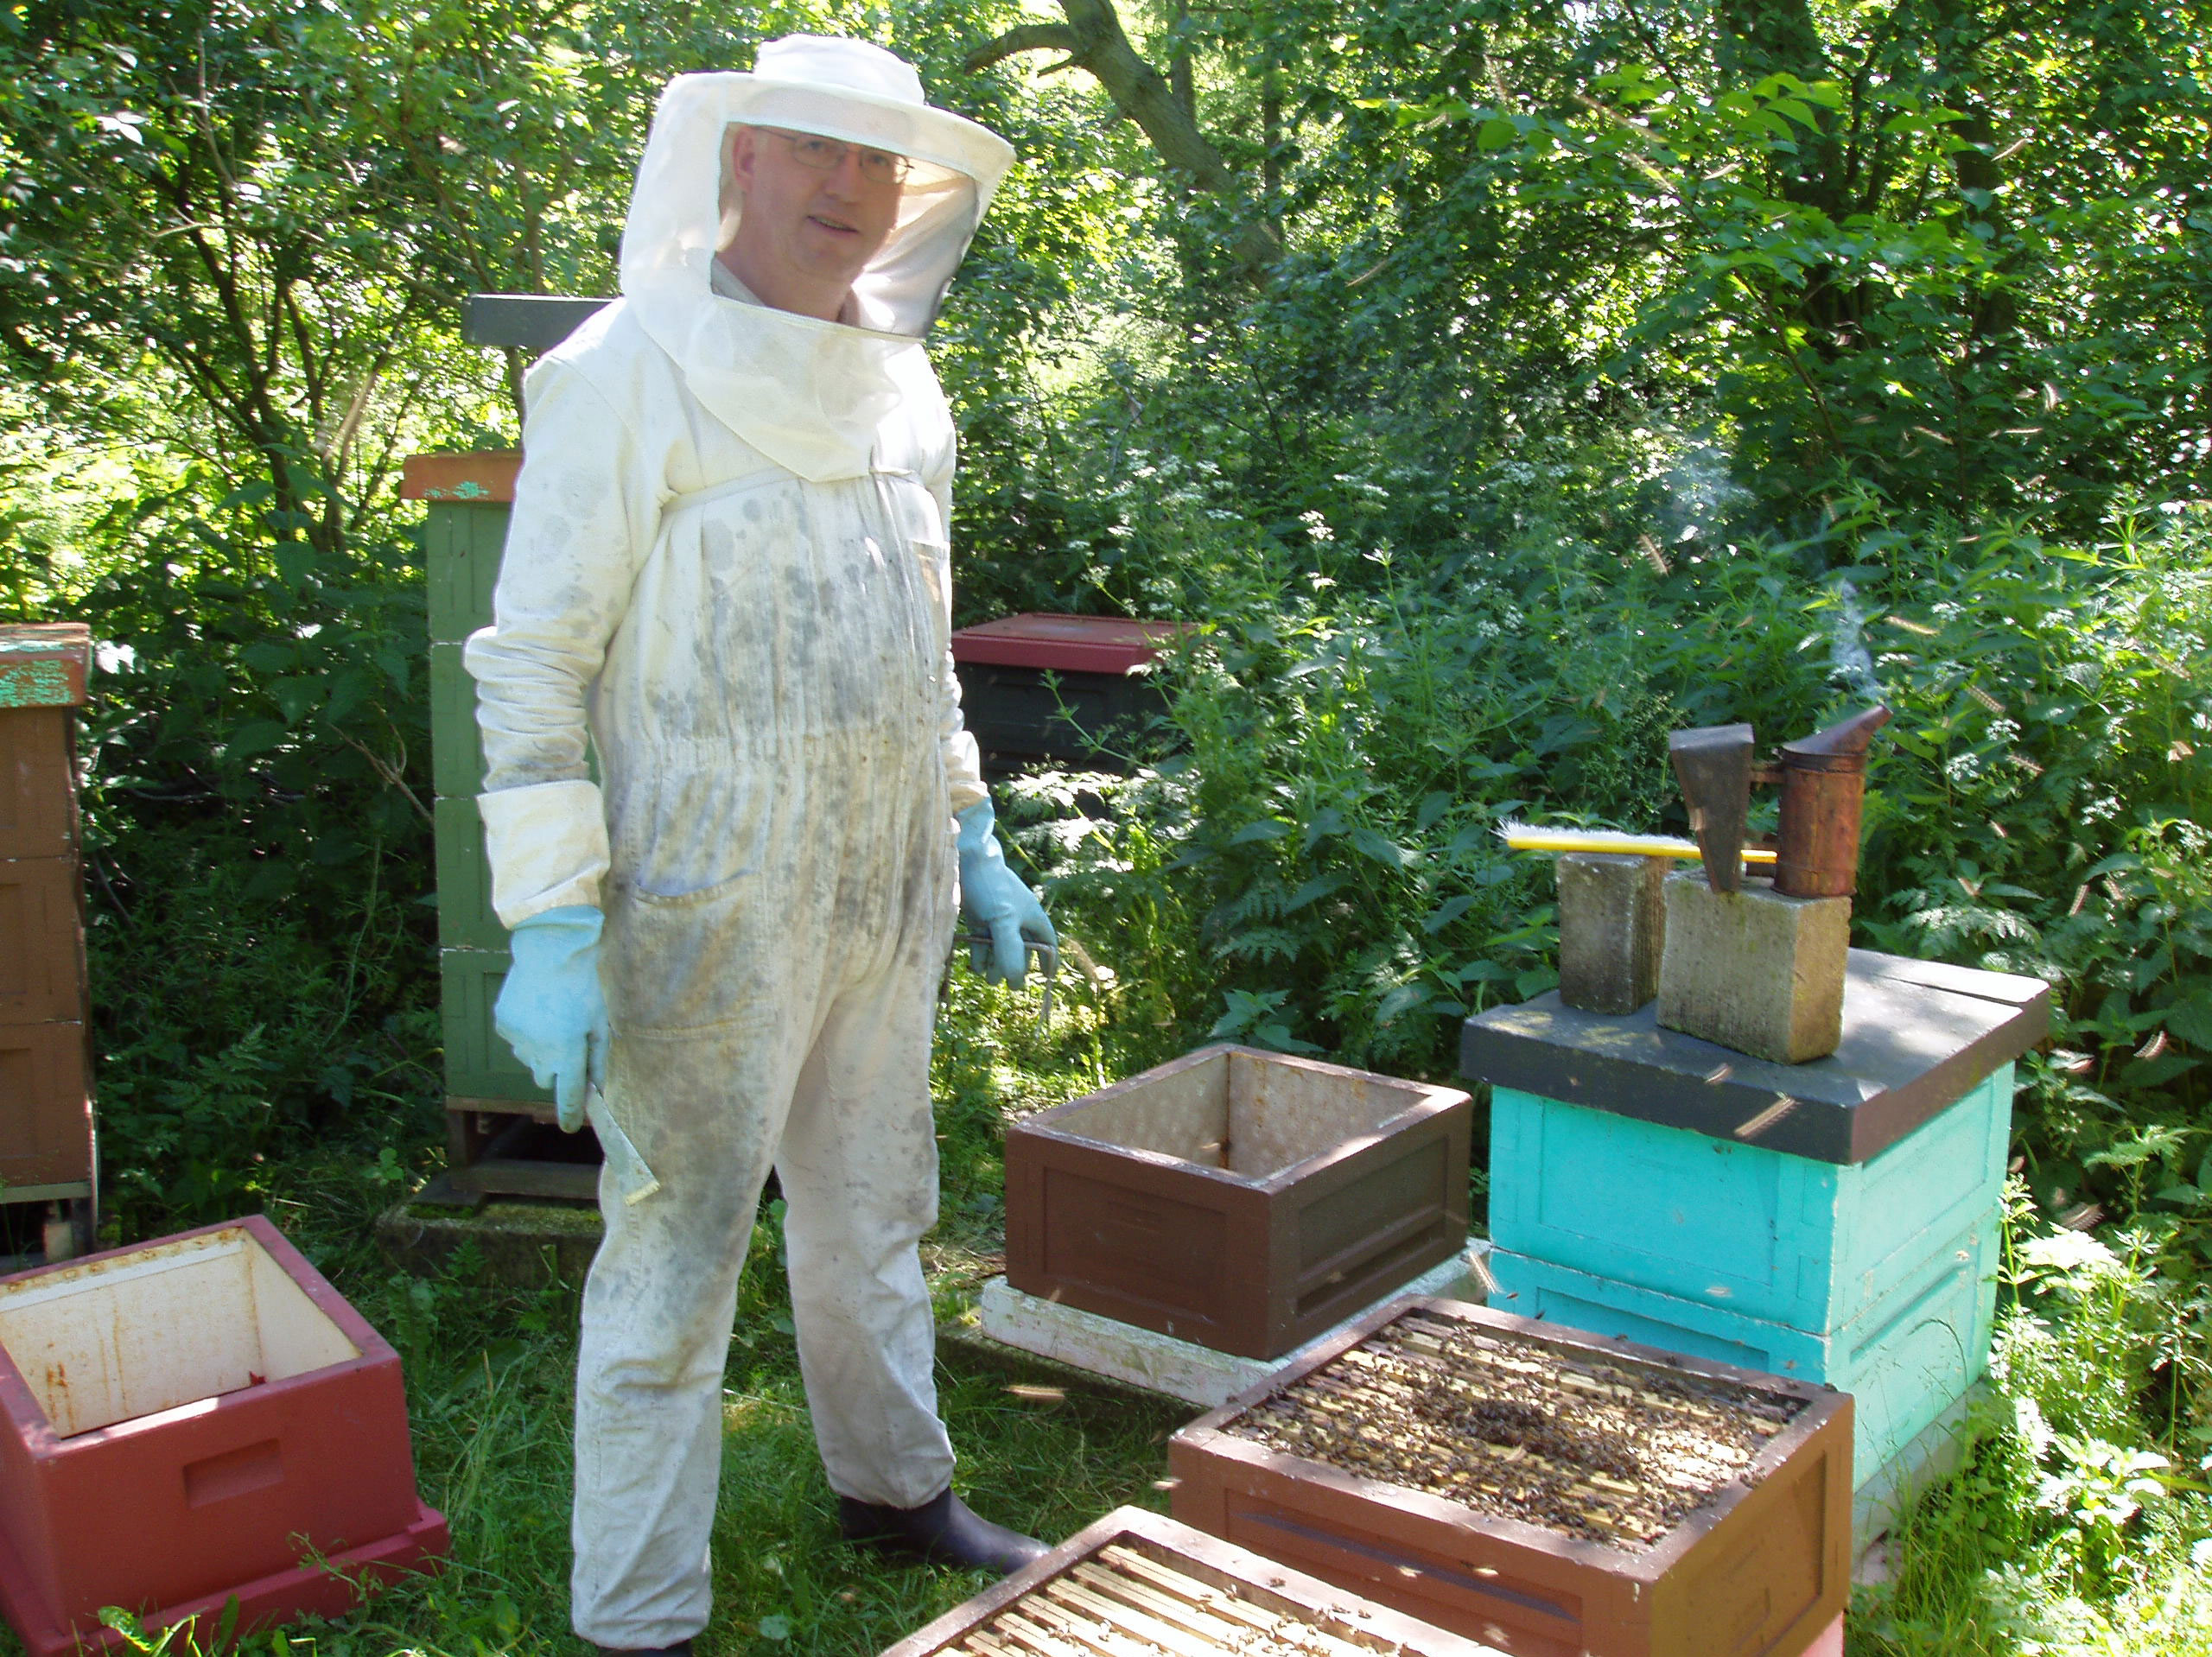 Biavleren i arbejde